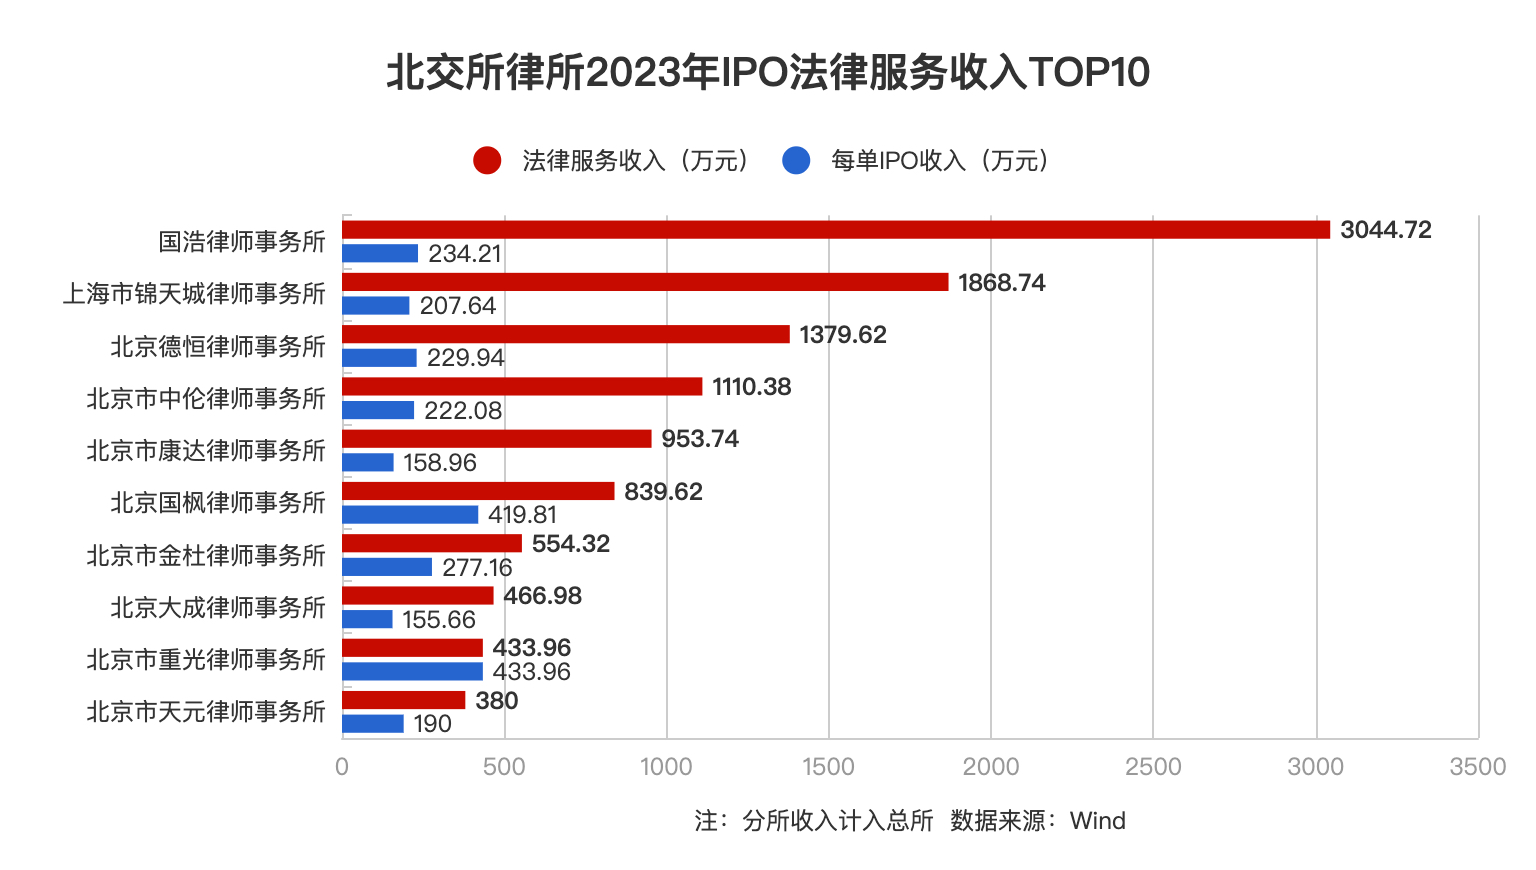 北交所律所2023年IPO法律服务收入TOP10